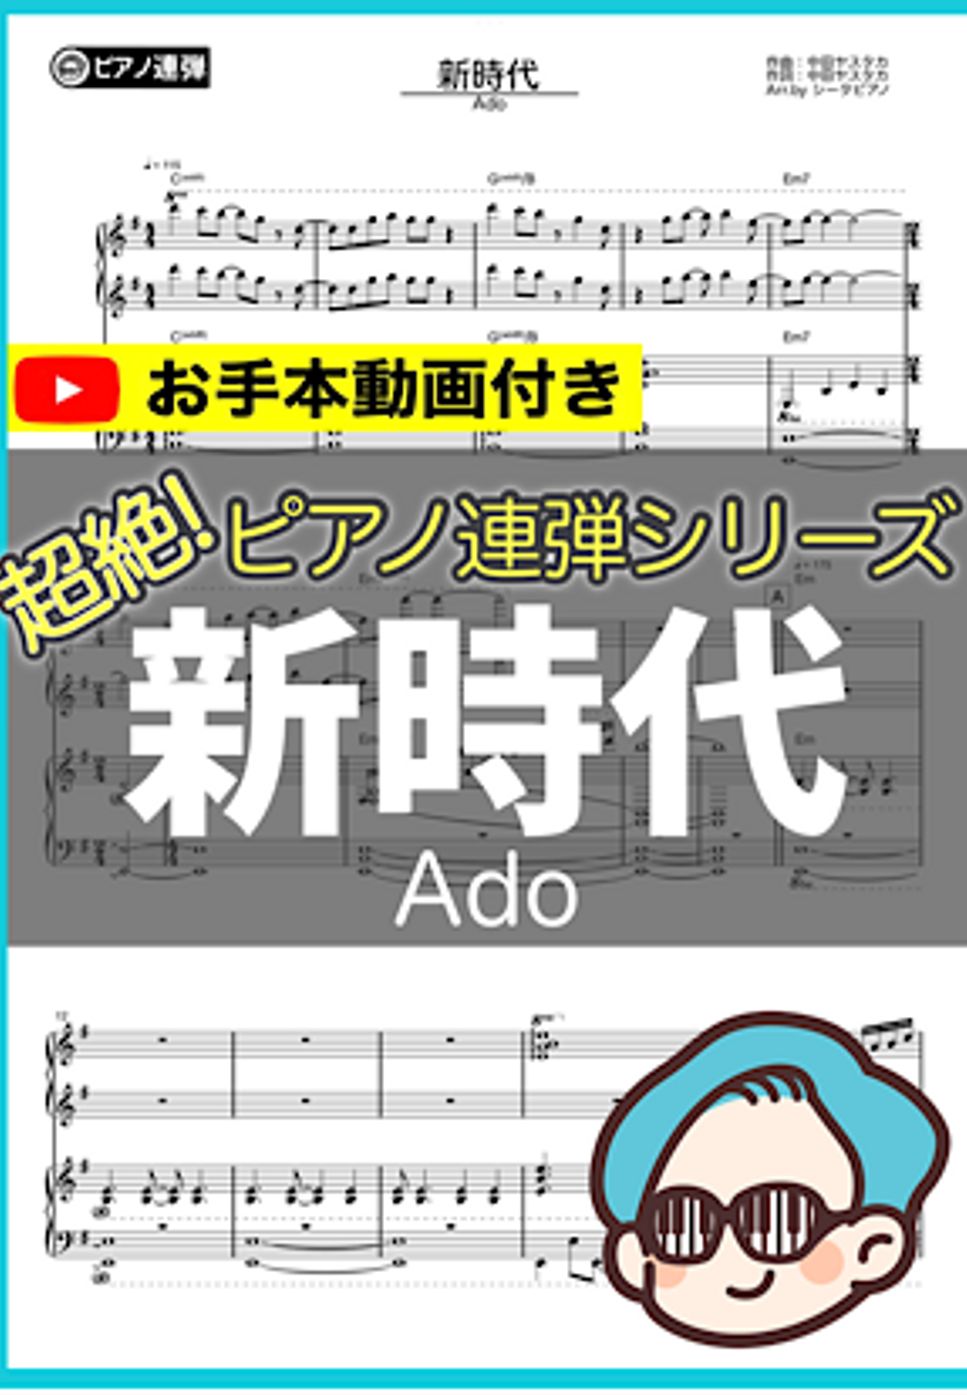 Ado - 新時代(連弾ver.) by シータピアノ